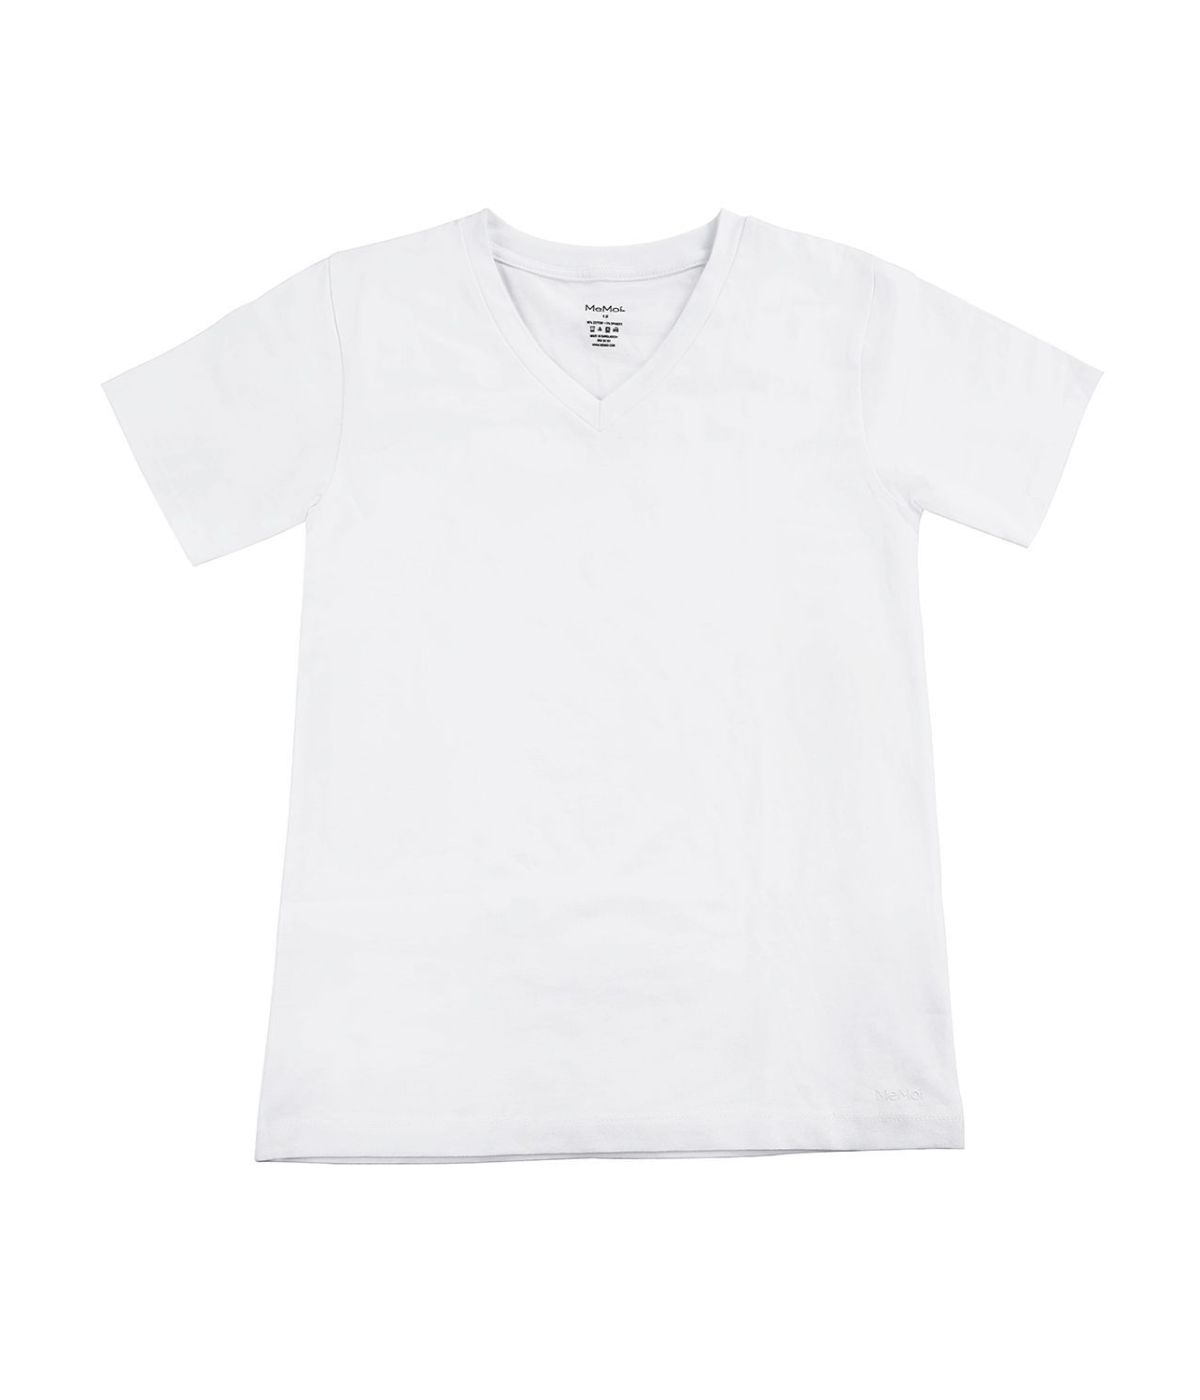 Boy's V-Neck Cotton T-Shirt 3-Pack White-White-White